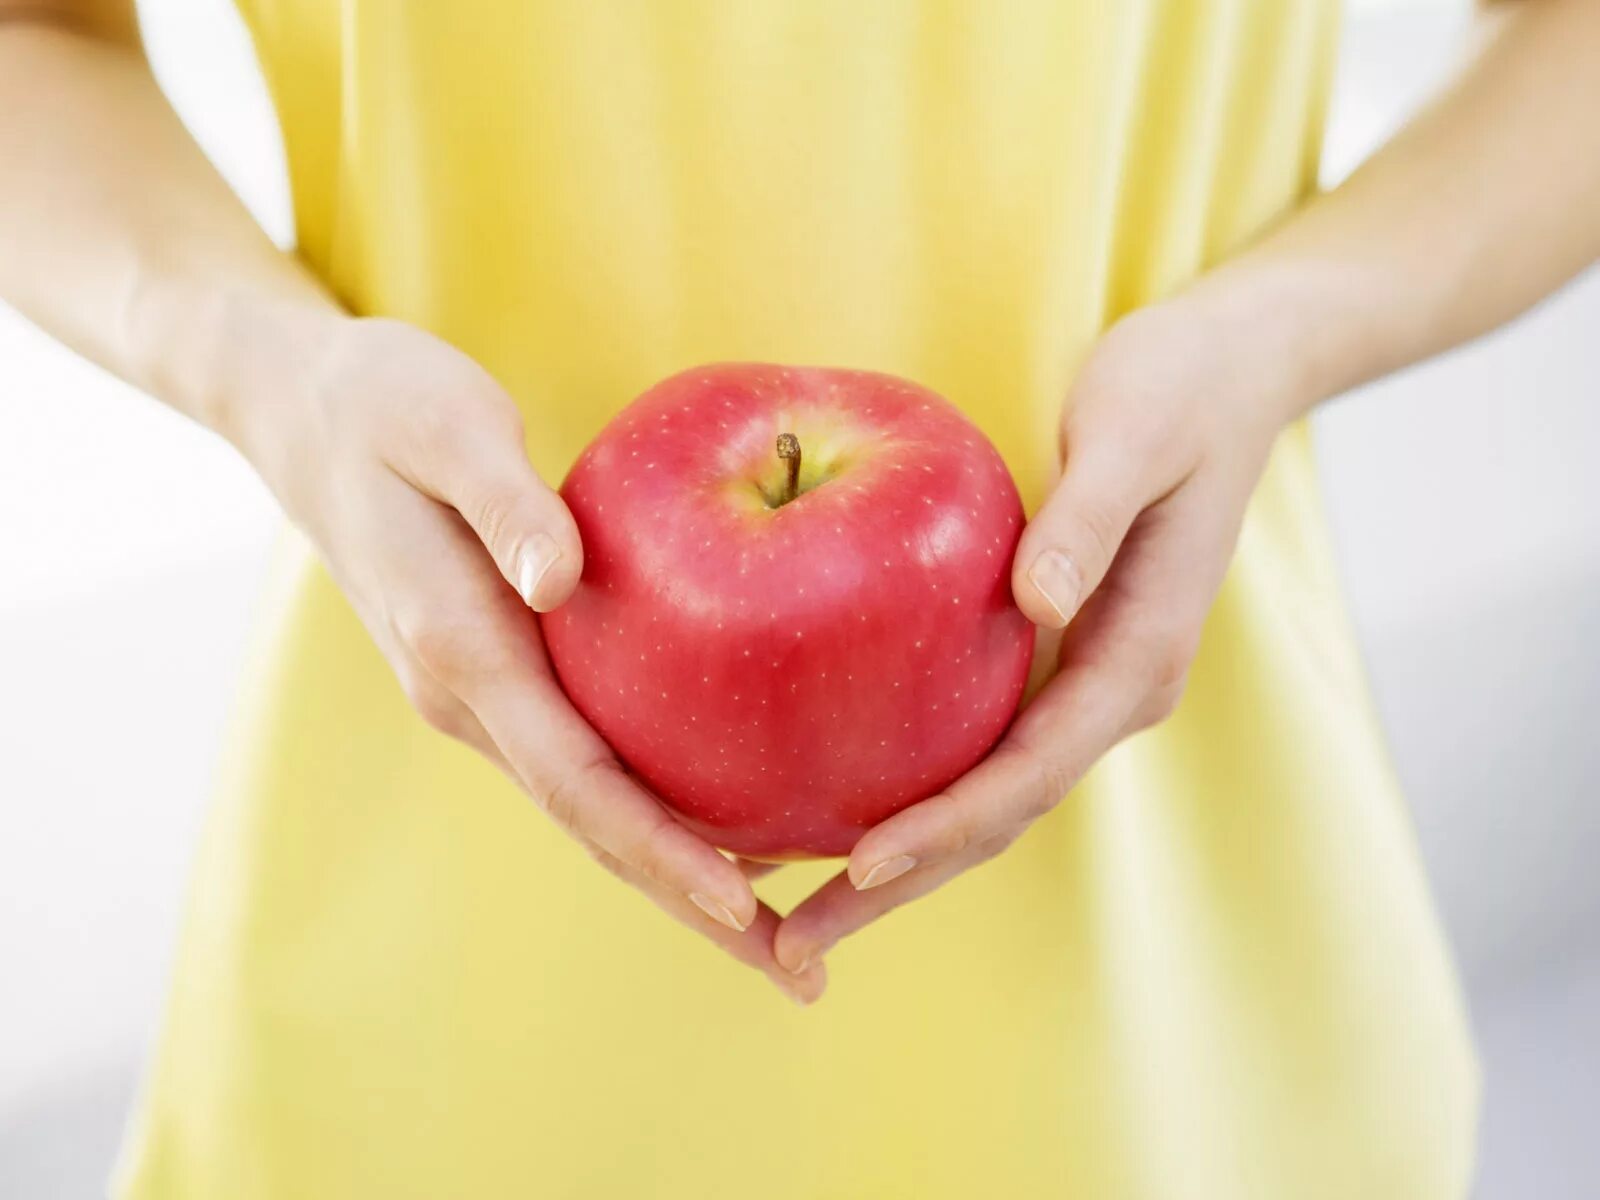 Яблоко в руке. Вздутие от яблок. Красное яблоко в руке. Кидает яблоко